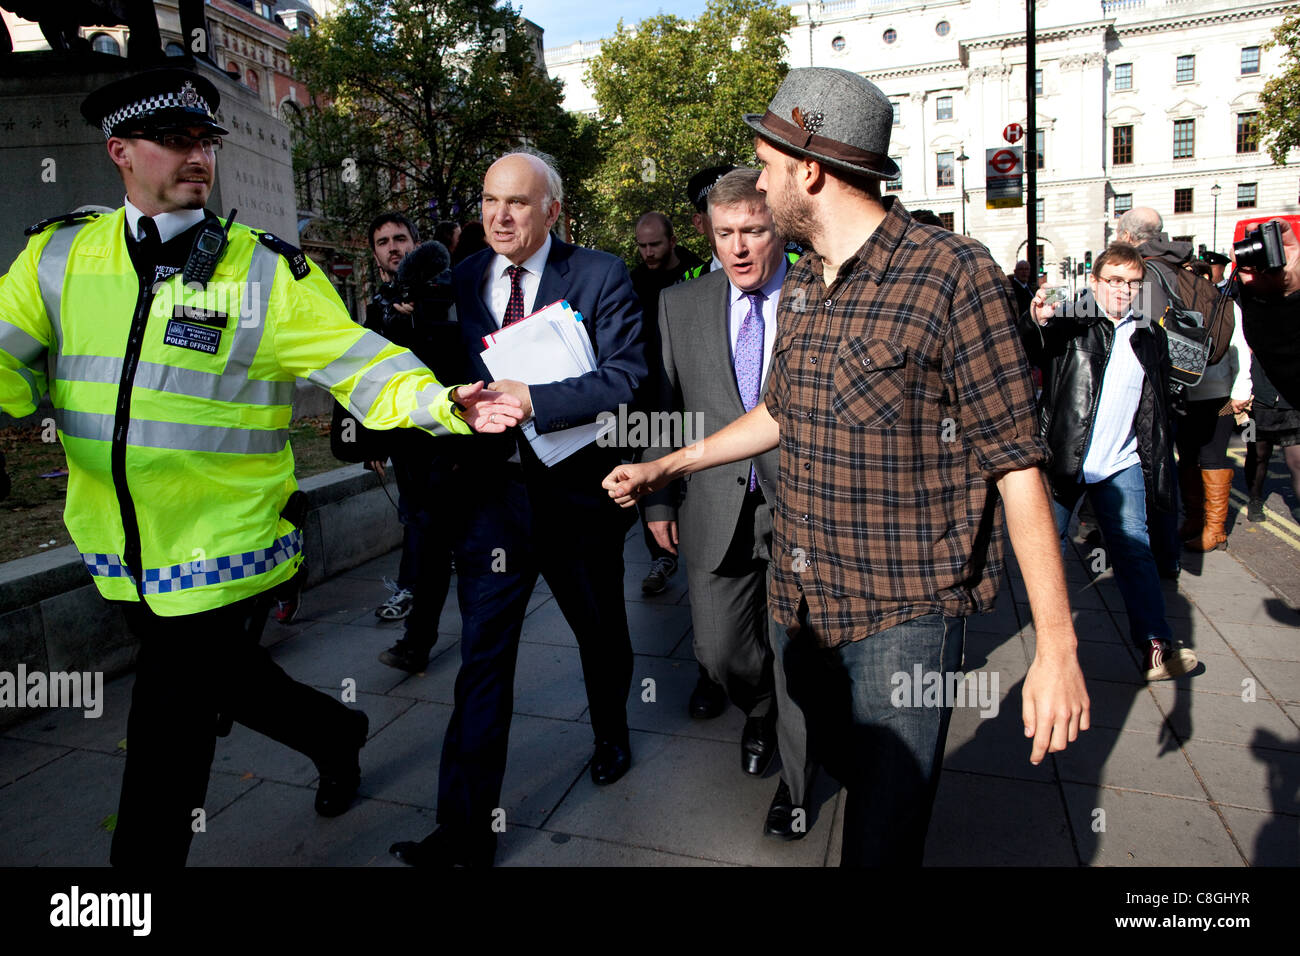 Vince il cavo, il Segretario aziendale, si trova di fronte a manifestanti contrari alla "corporate tax dodging' come egli cammina da Whitehall a Victoria Street, Londra, Regno Unito, lunedì 24 ottobre, 2011. Foto Stock